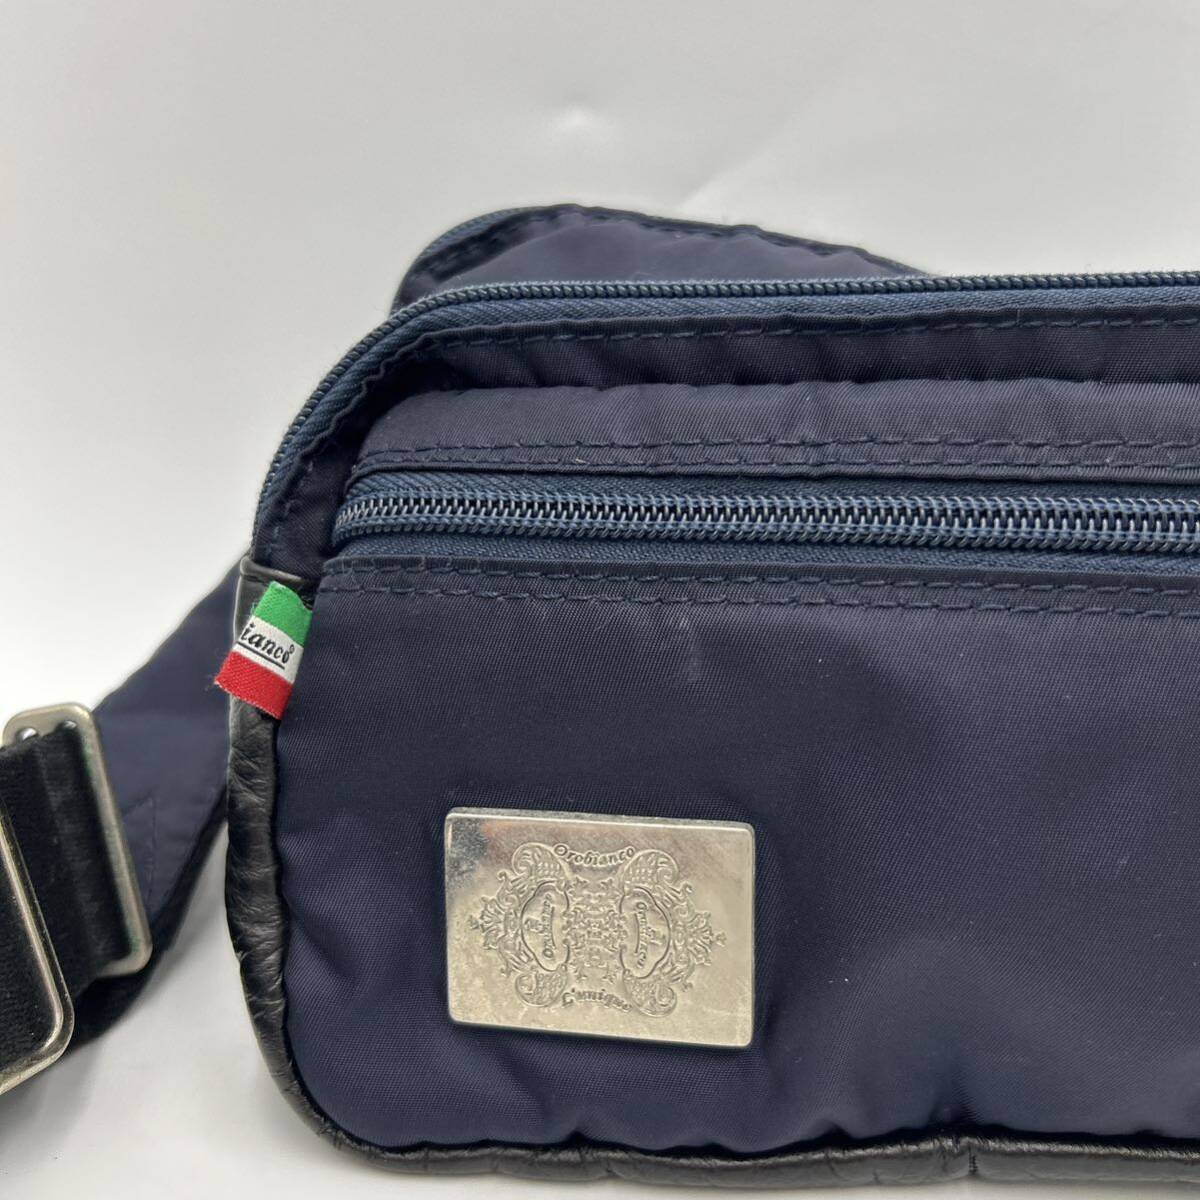 C ■ イタリア製 '高級感溢れる' Orobianco オロビアンコ LIMONTA社製 ウエストバッグ 斜め掛け鞄 ボディバッグ 紳士鞄 ショルダーバッグの画像2